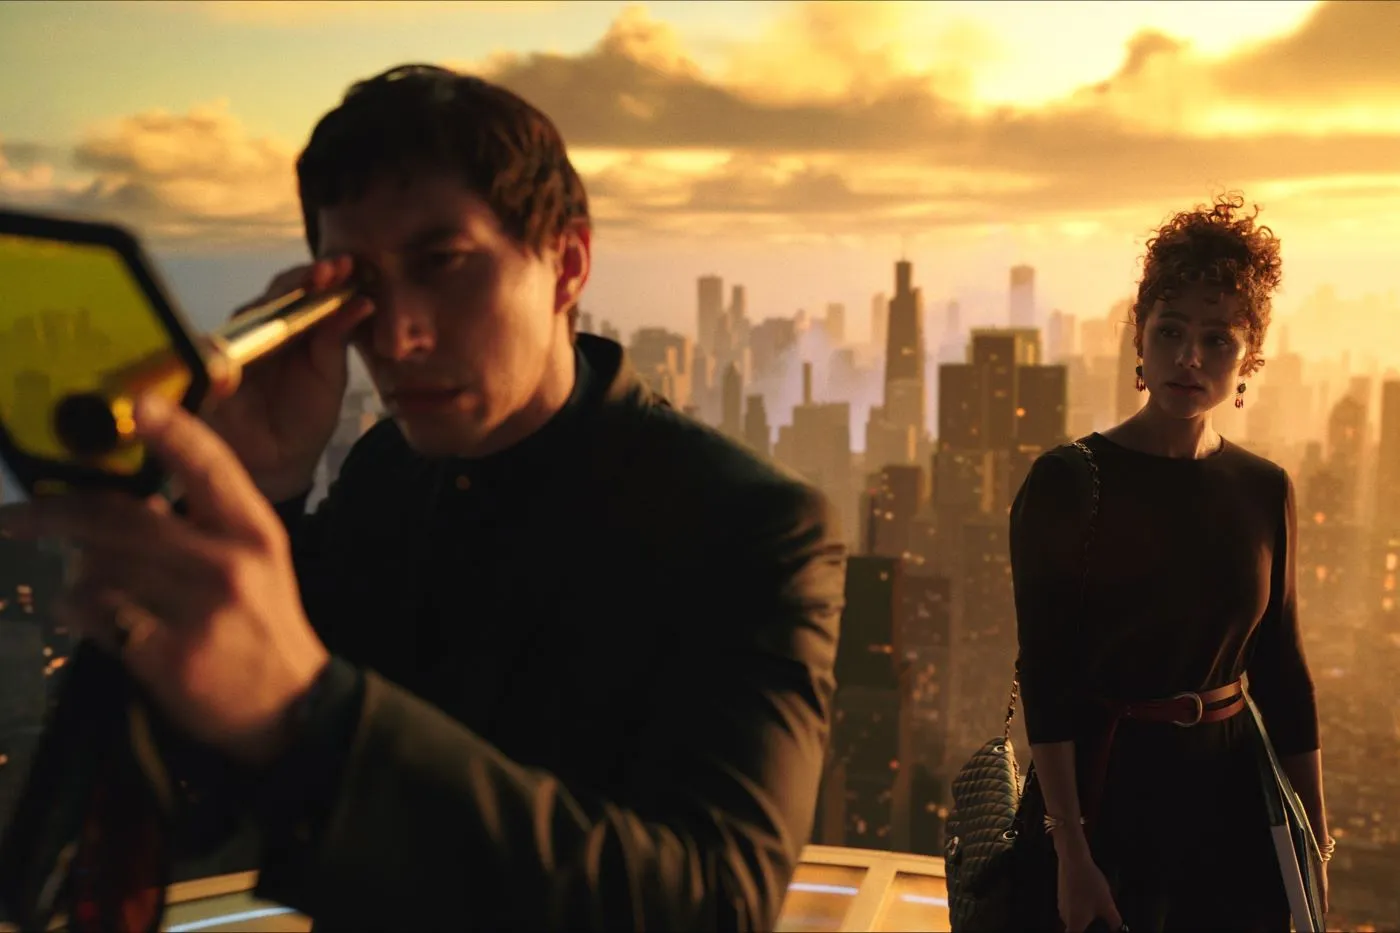 zwei Menschen stehen auf dem Dach eines Wolkenkratzers, im Hintergrund ragen die Häuser einer Stadt im dämmernden Sonnenlicht nach oben, links im Bild steht ein Mann in dunkler Kleidung, der durch ein fernglasähnliches Gerät blickt, hinter ihm steht eine Frau, die ihn mustert